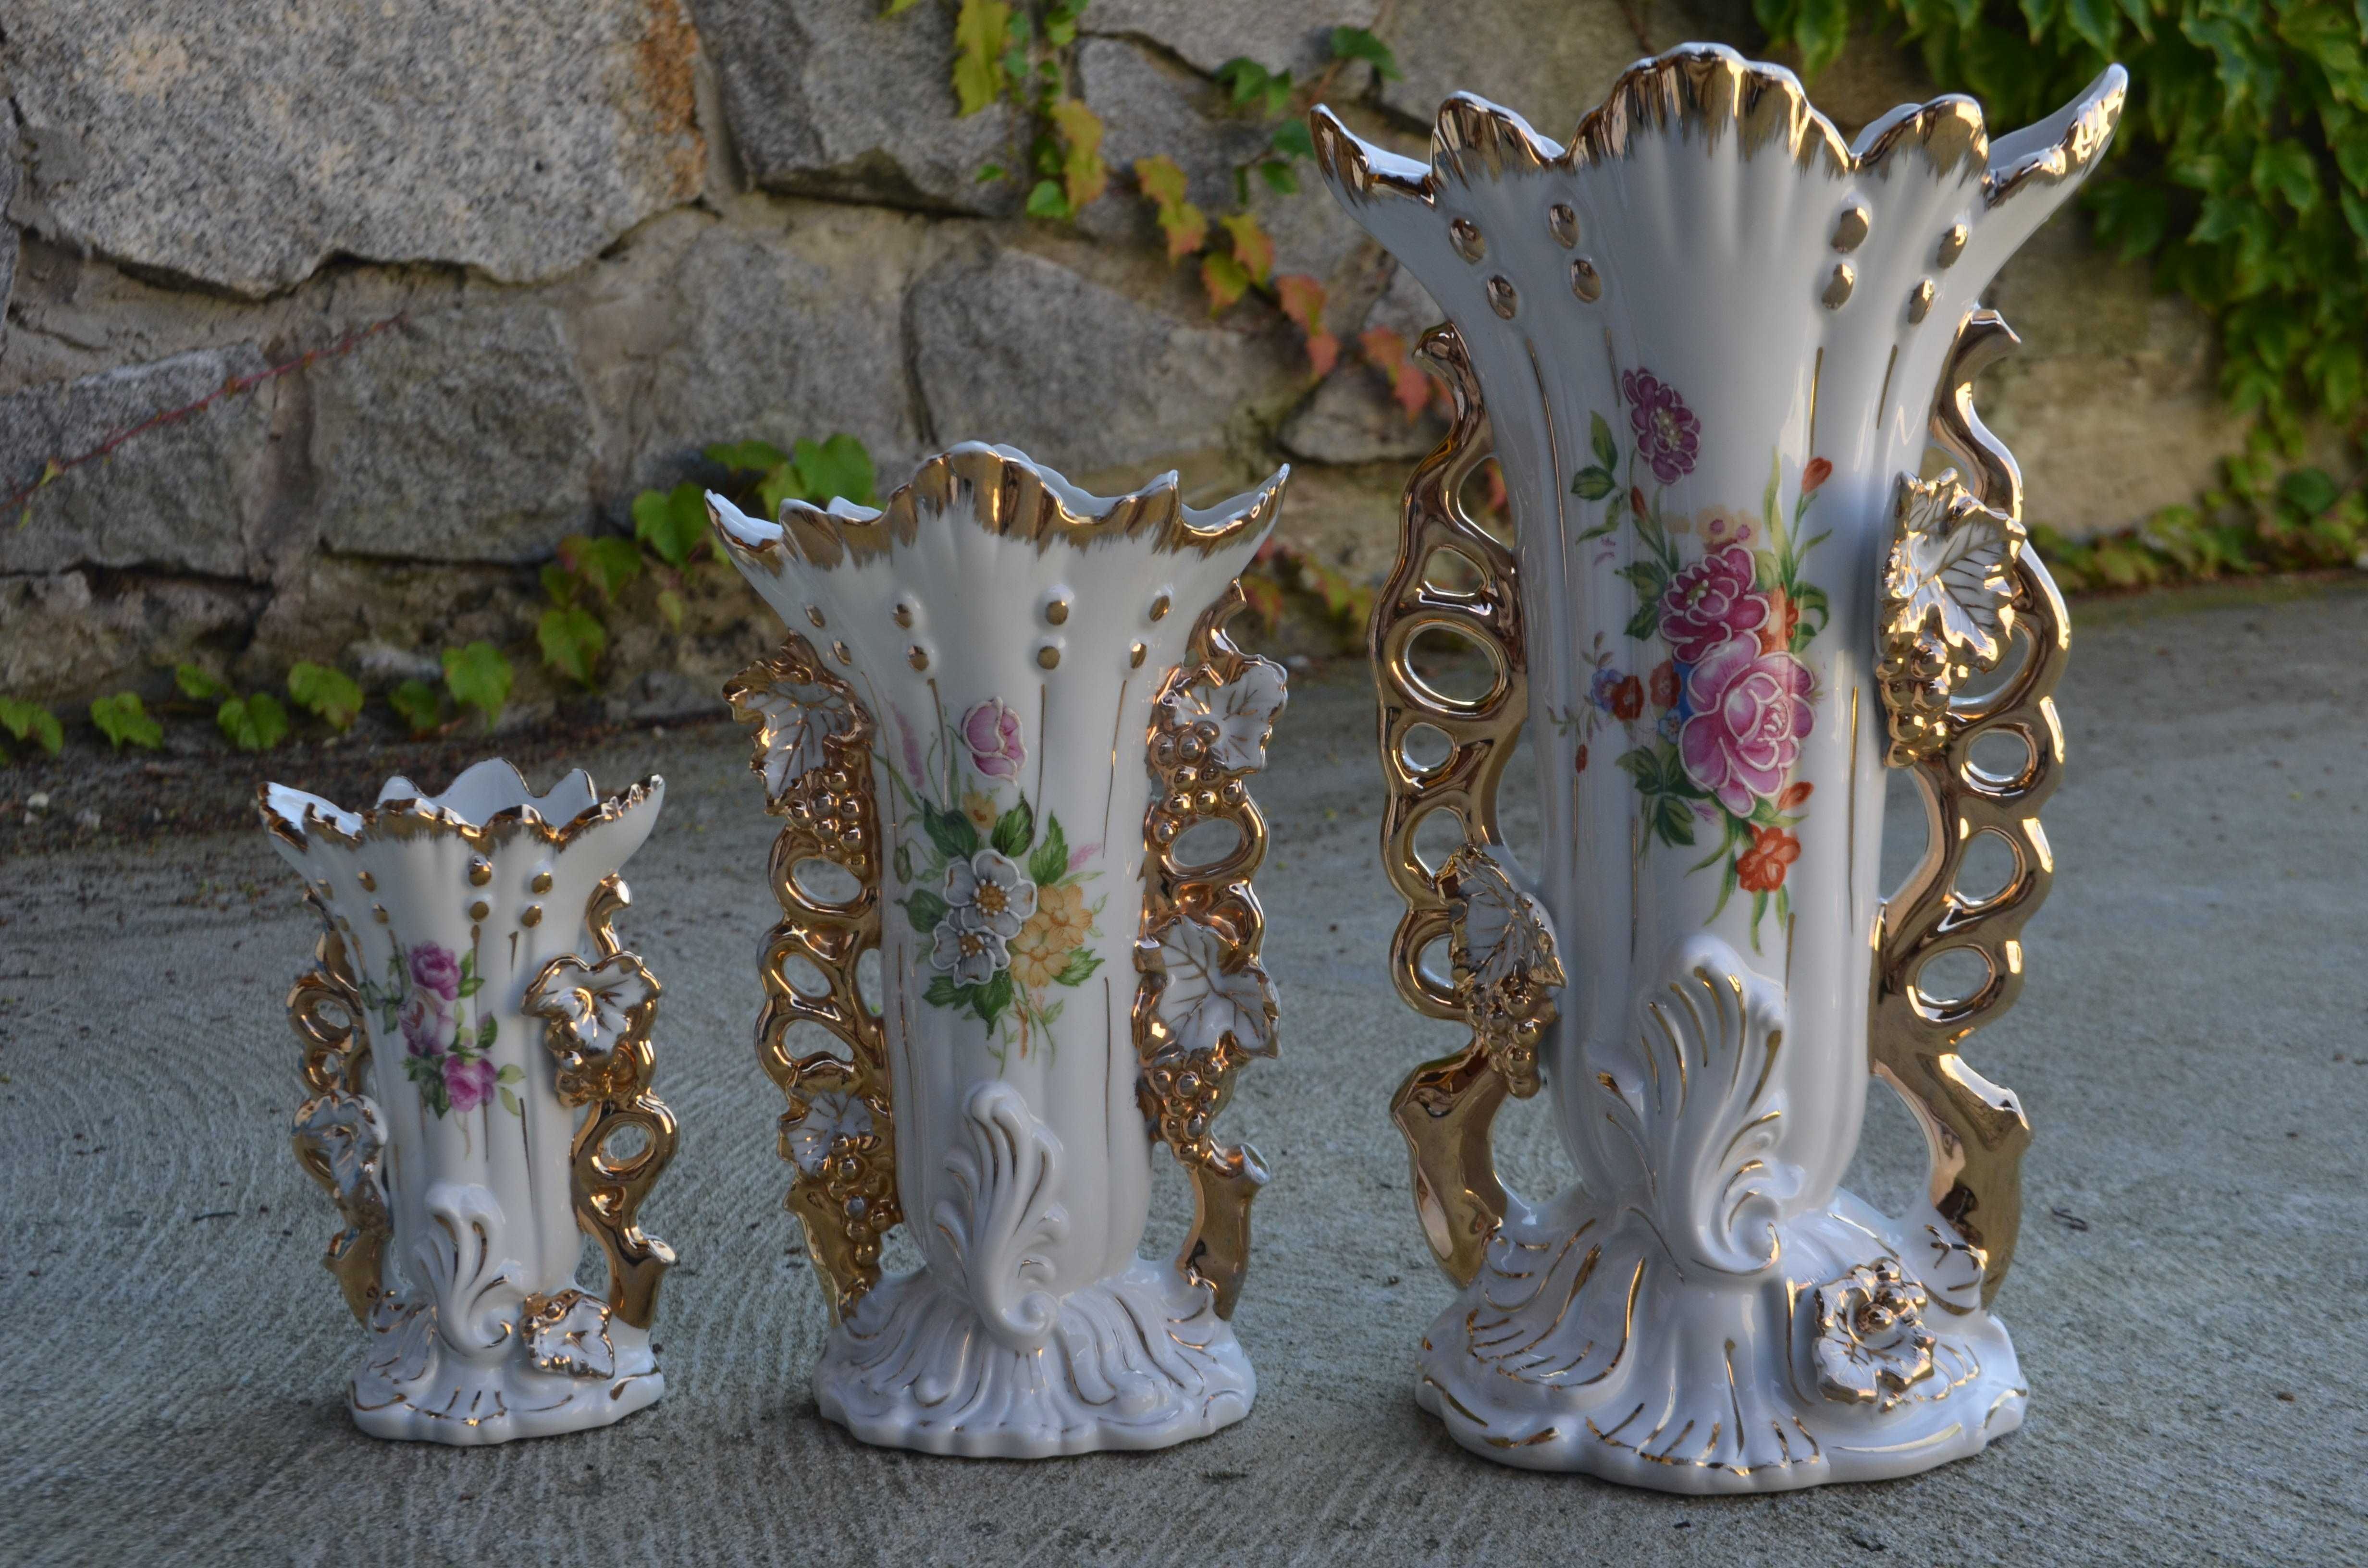 zestaw wazon ślubny porcelana wycisk numeryczny